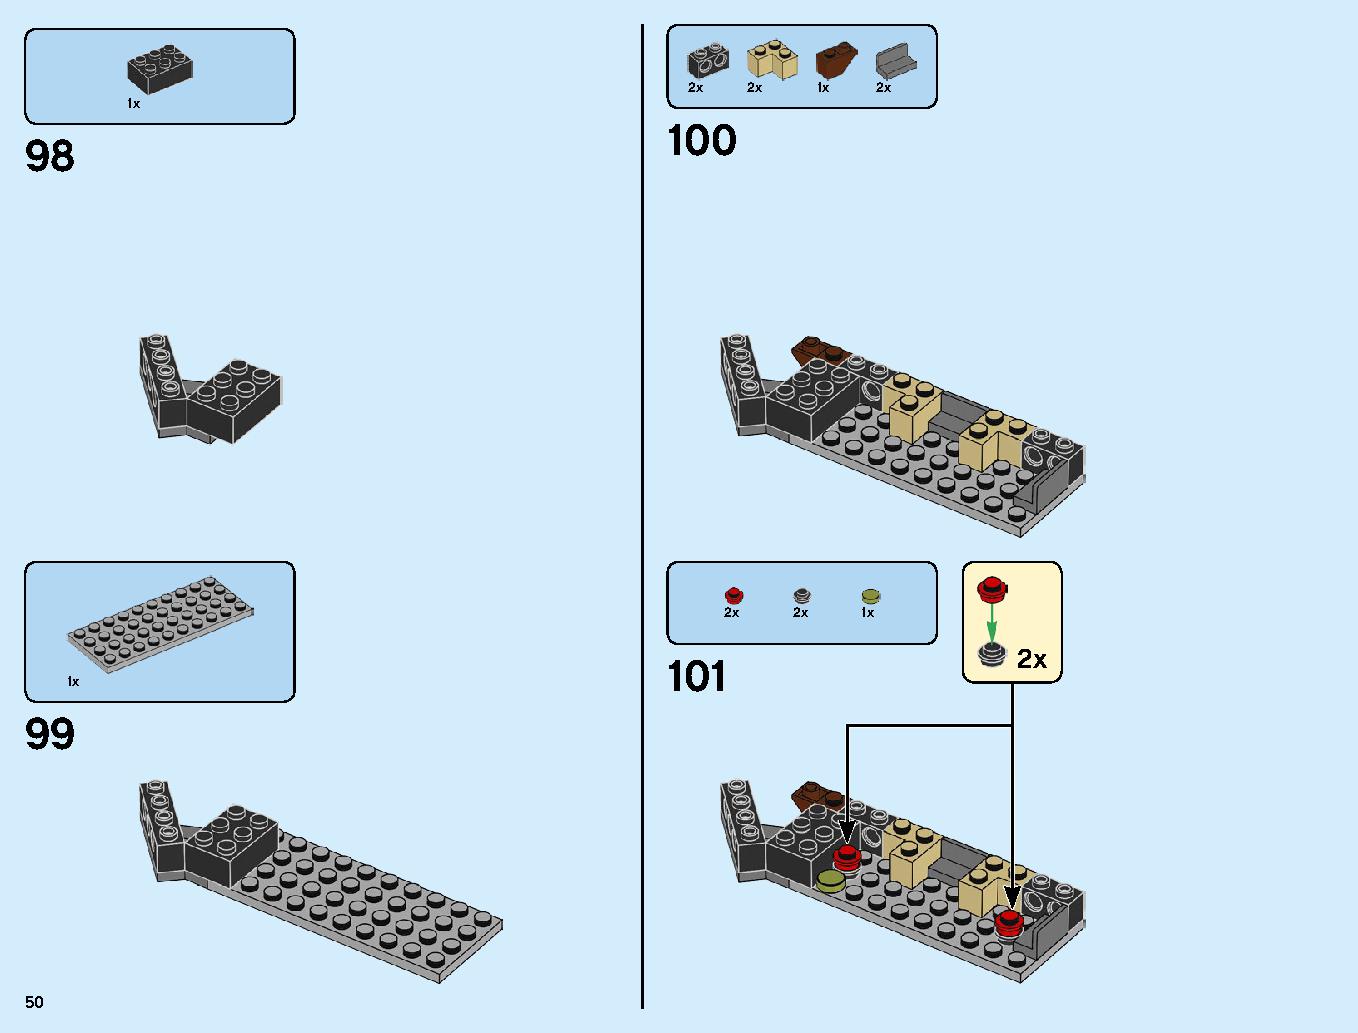 ニンジャ道場 70670 レゴの商品情報 レゴの説明書・組立方法 50 page